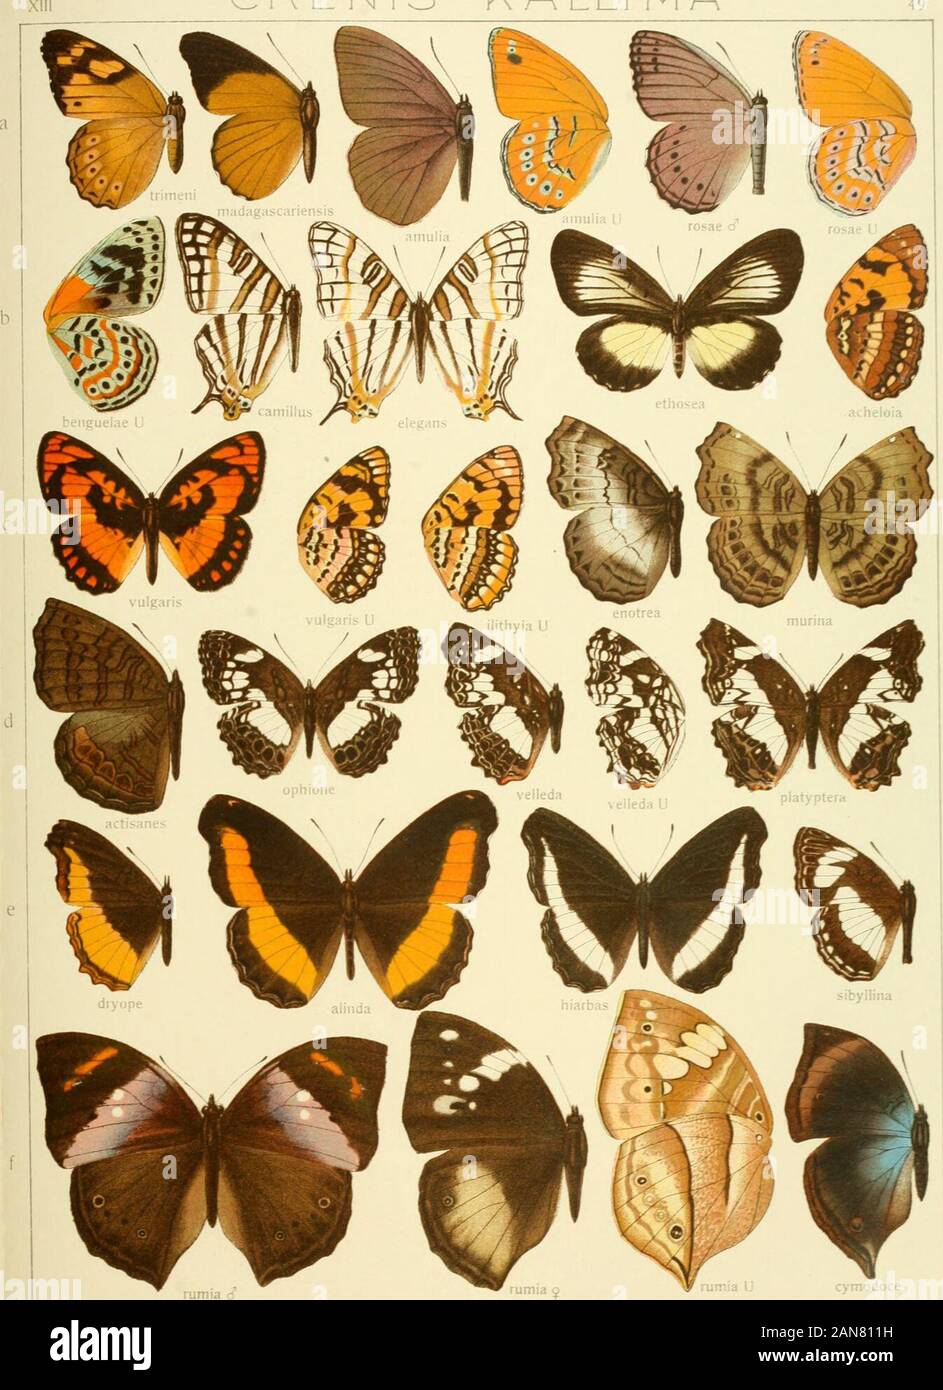 Die Gross-Schmetterlinge der Erde : eine systematische Bearbeitung der bis jetzt bekannten Gross-Schmetterlinge . Pars II. Fauna africana 1. CREN IS - K ALLI MA 49. cjinodoce Pars II Fauna africana 1. XIII KALL! (V) A- PRECIS 50 Stock Photo